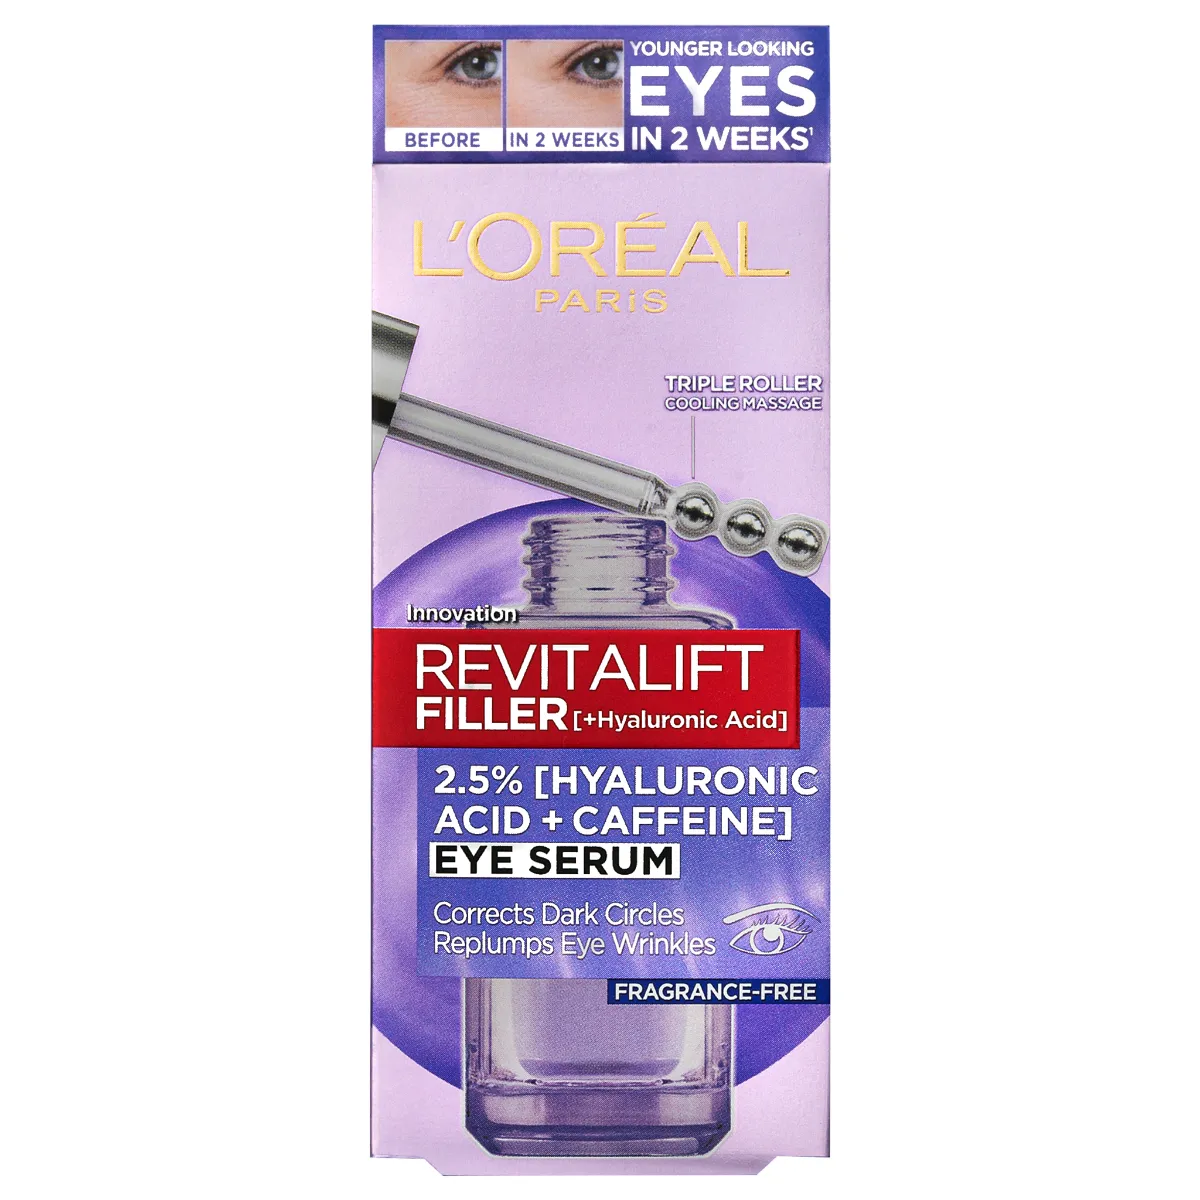 Loréal Paris Revitalift Filler oční sérum 20 ml